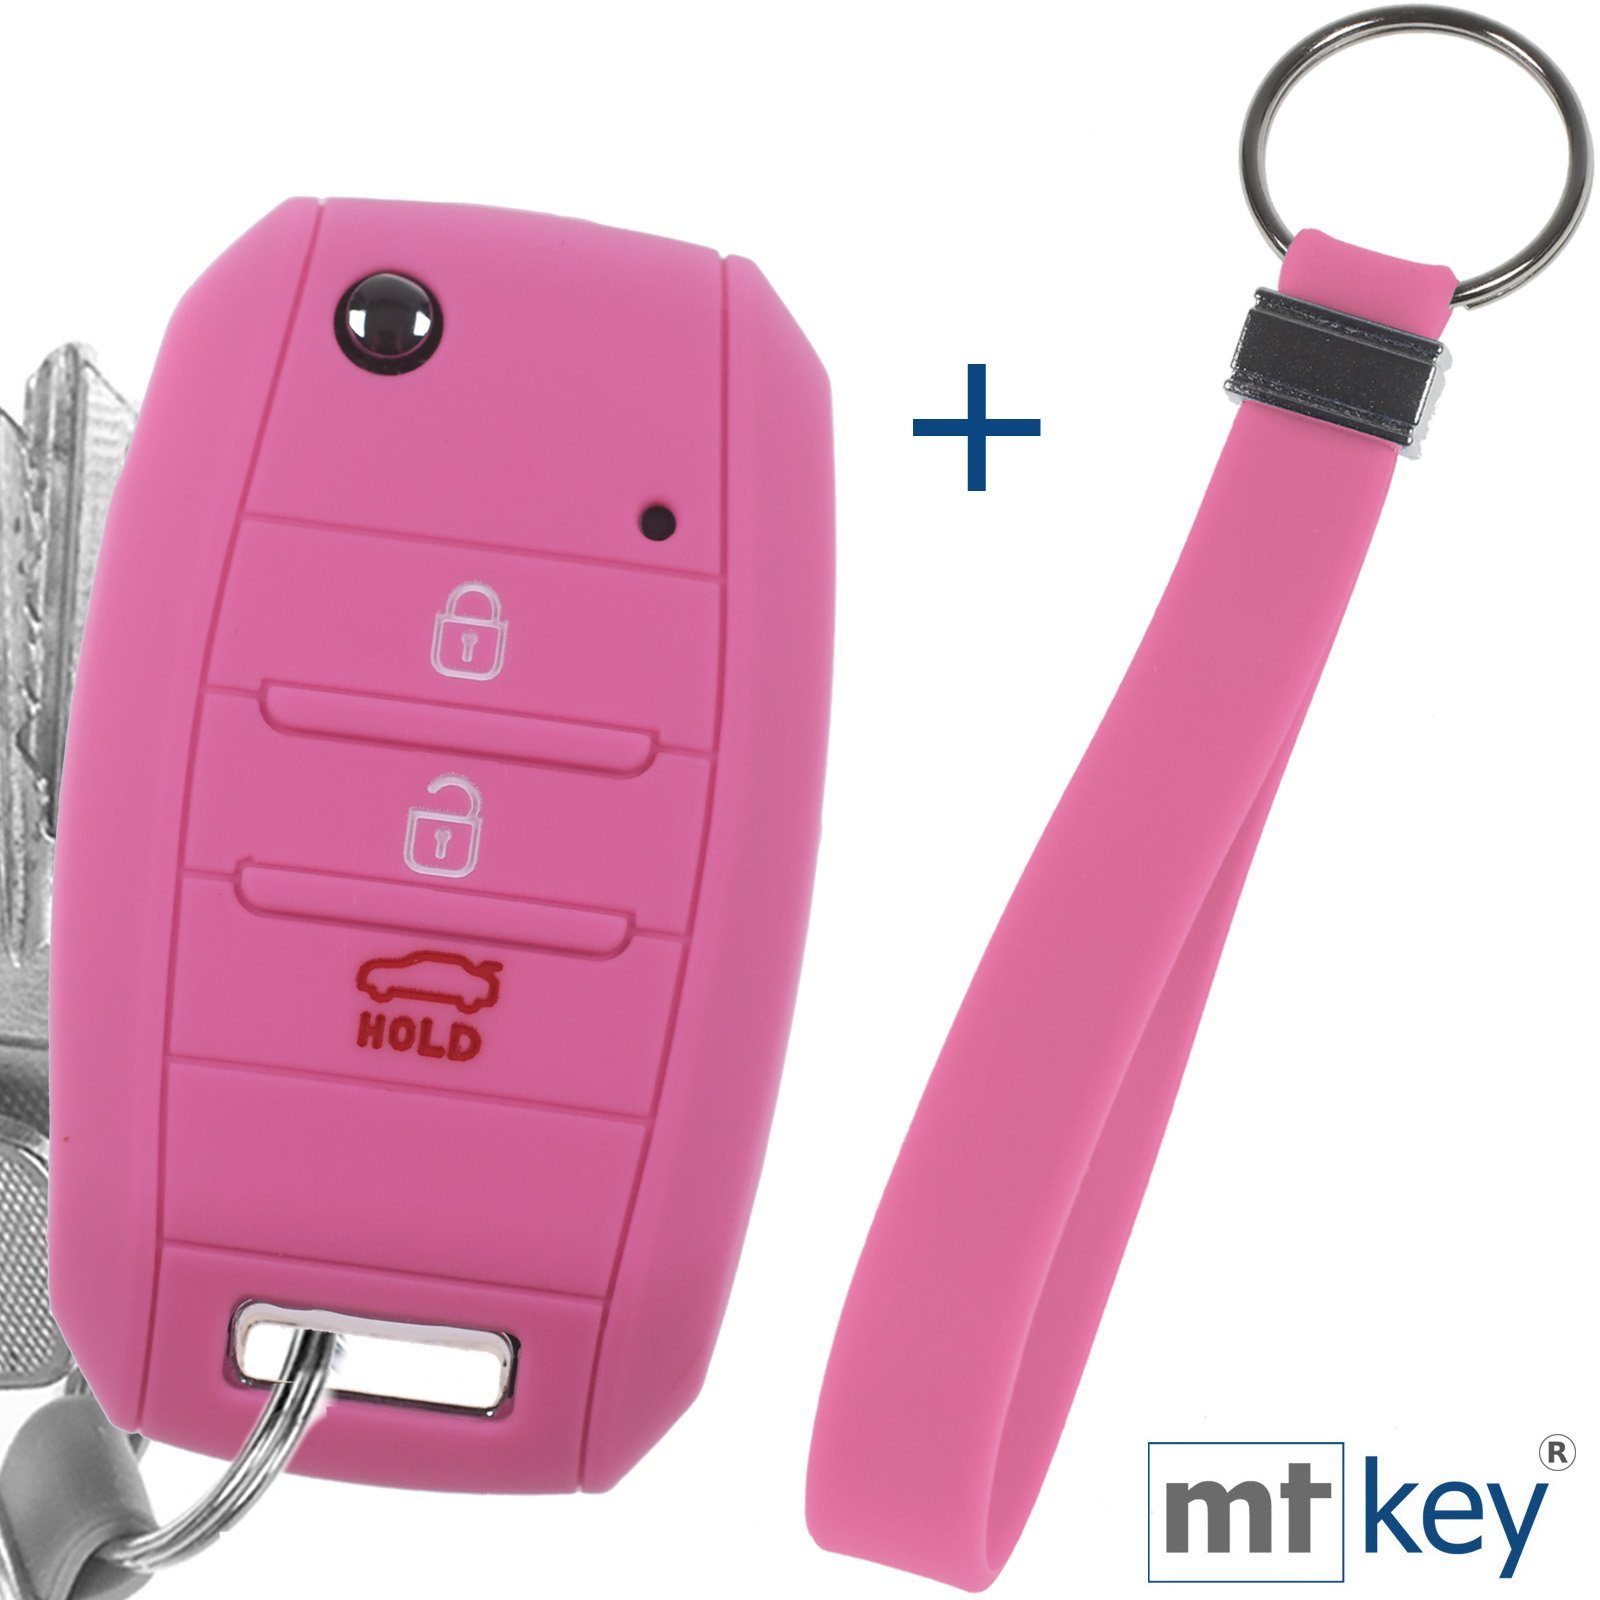 mt-key Schlüsseltasche Autoschlüssel Softcase Silikon Schutzhülle Rosa mit Schlüsselband, für KIA Picantio Rio Ceed Soul Sportage Stonic Carens 3 Tasten | Schlüsseltaschen